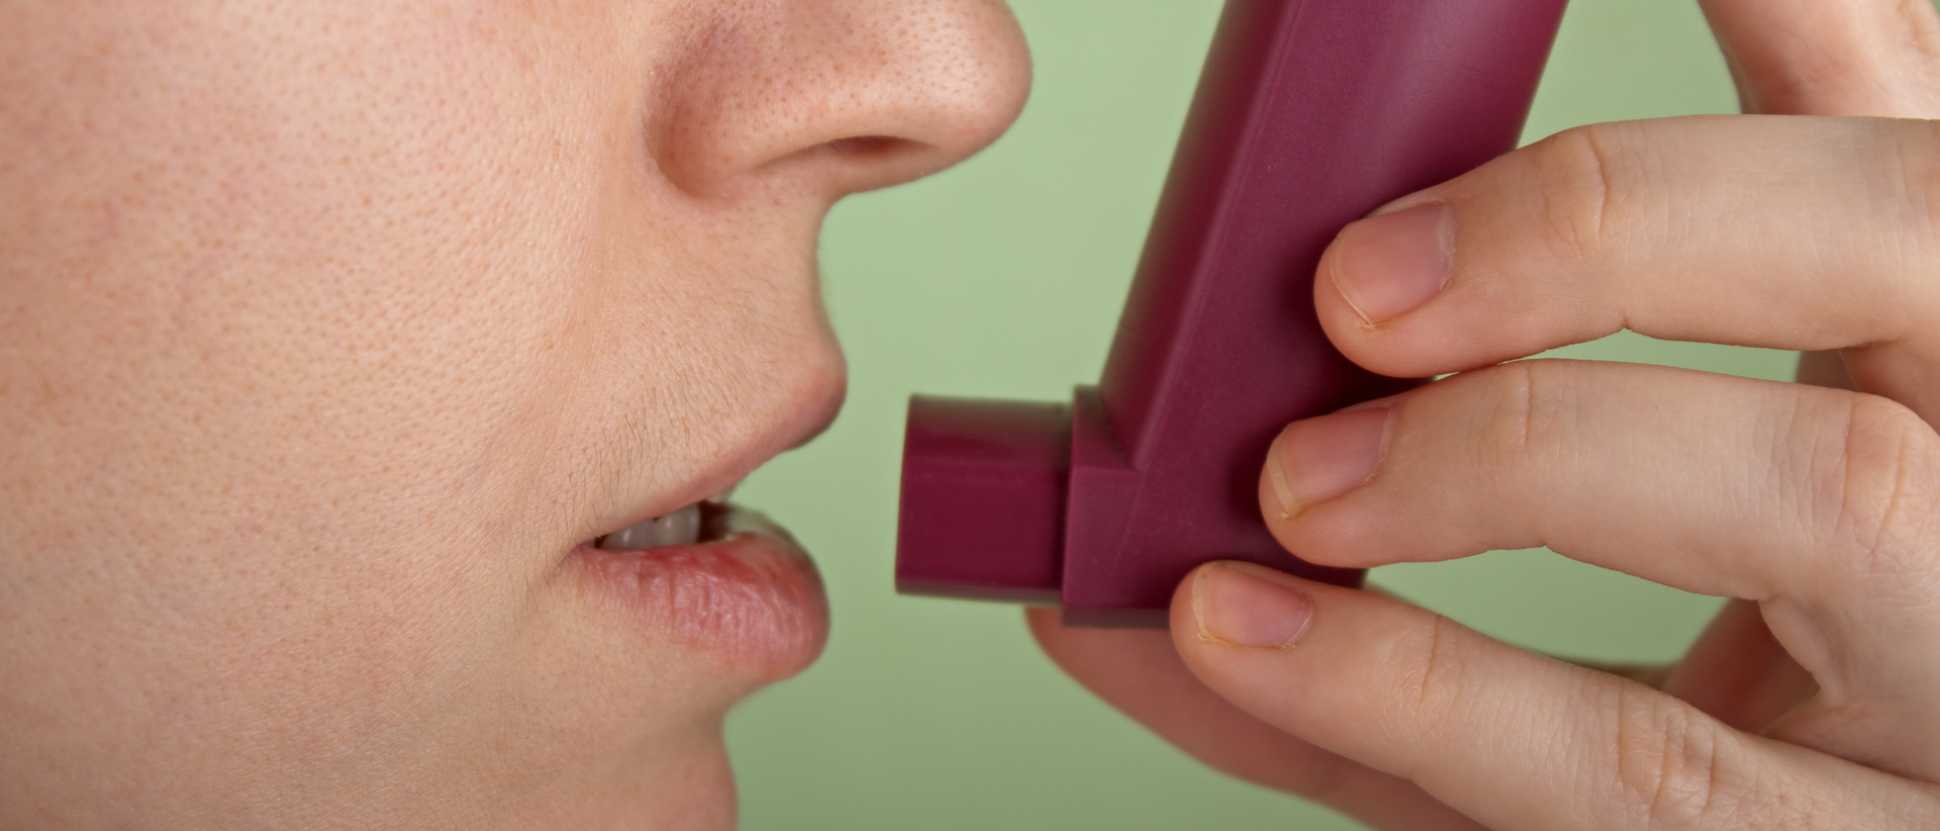 160920-Vitamin-D-may-reduce-asthma-attacksjpg